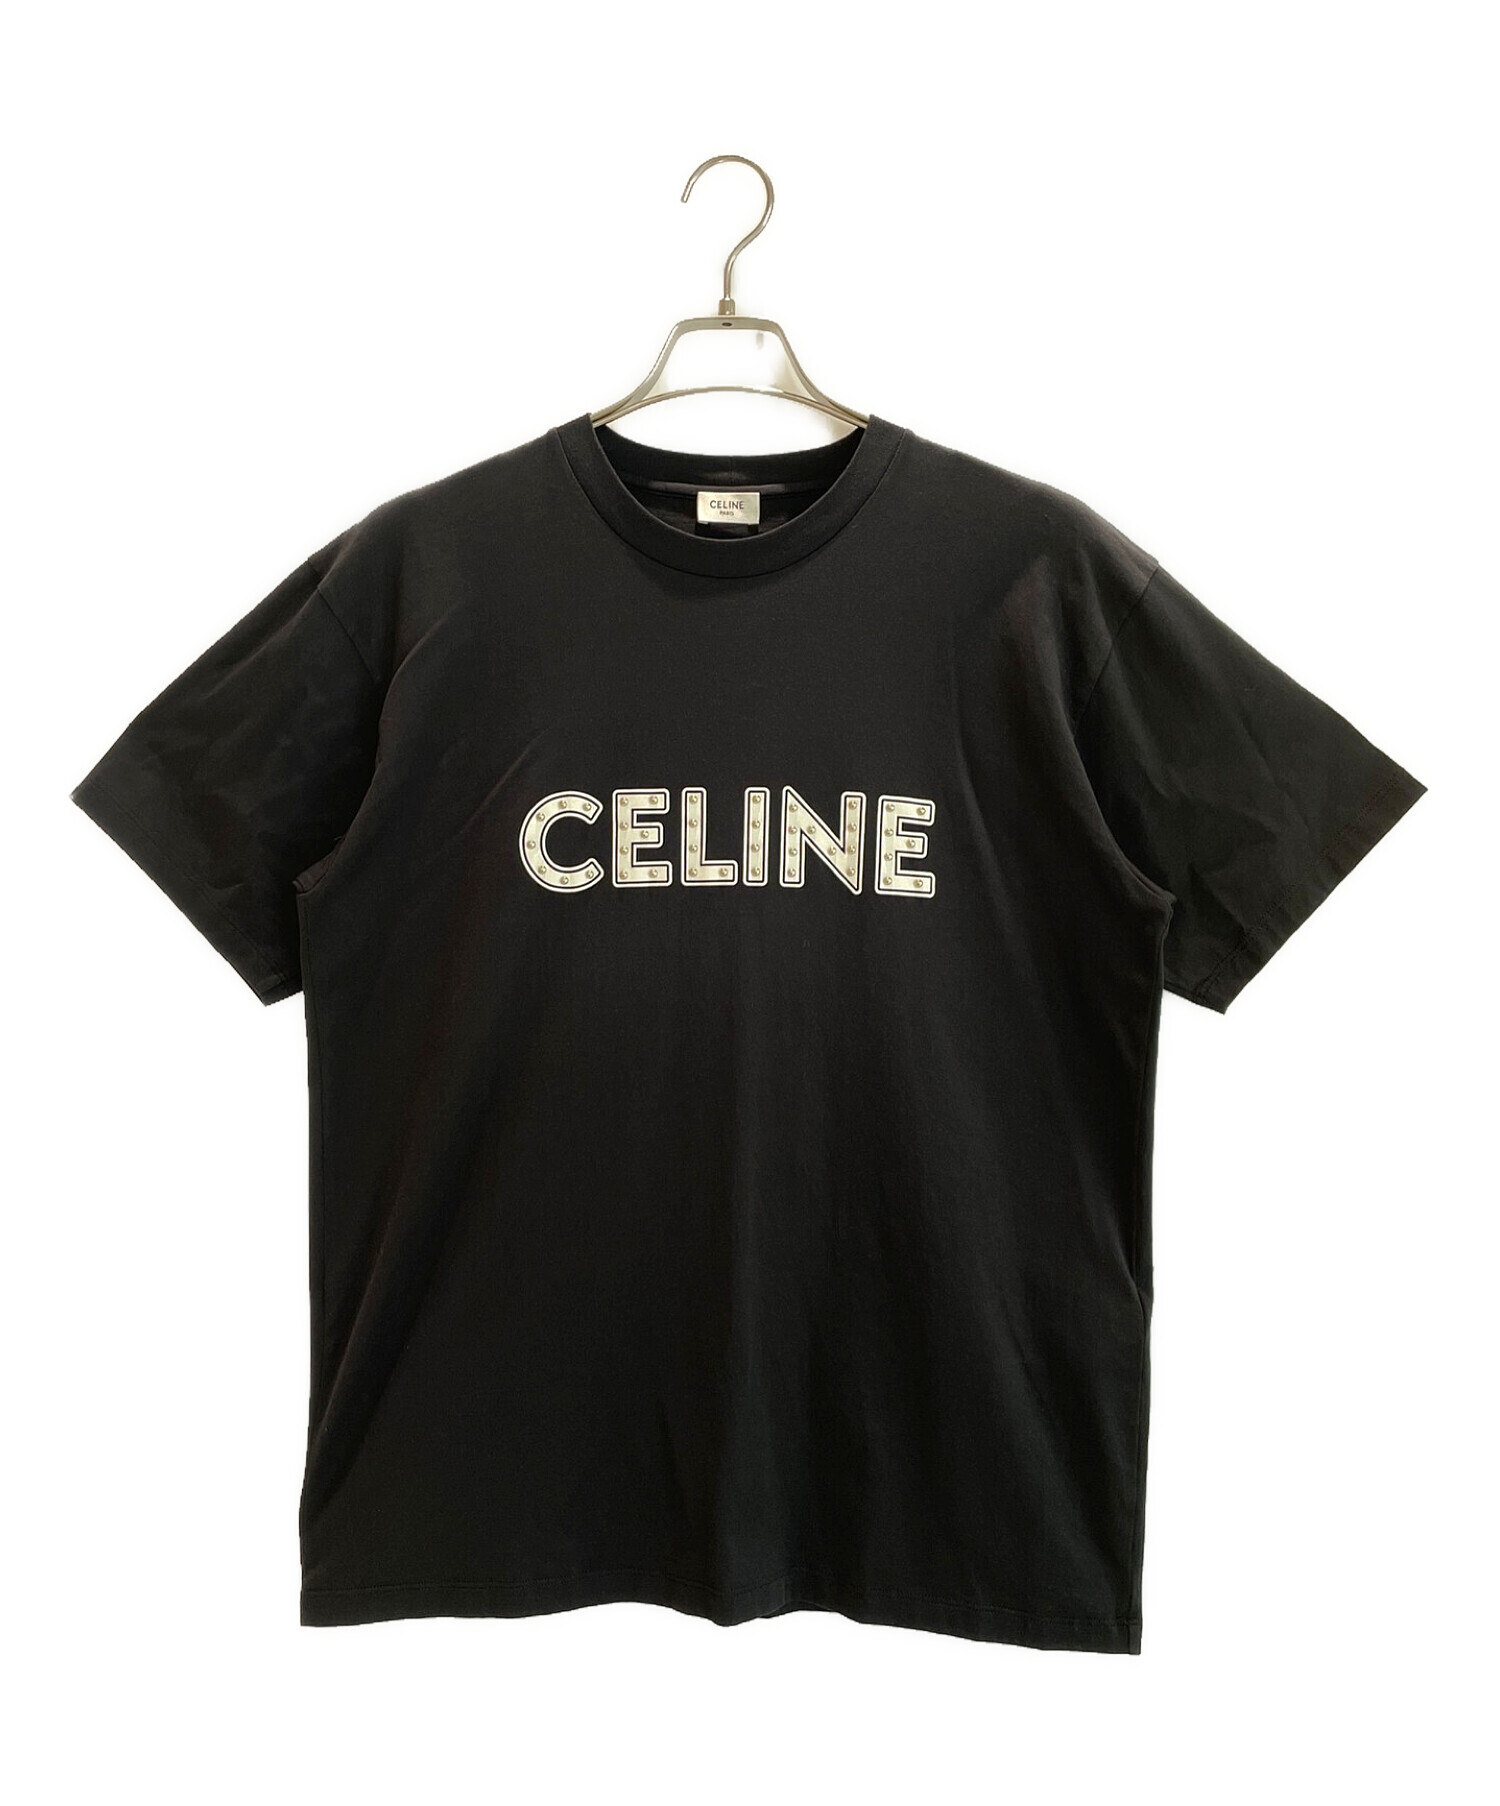 CELINE セリーヌ スタッズ ロゴ Tシャツ ブラック☆Sサイズ